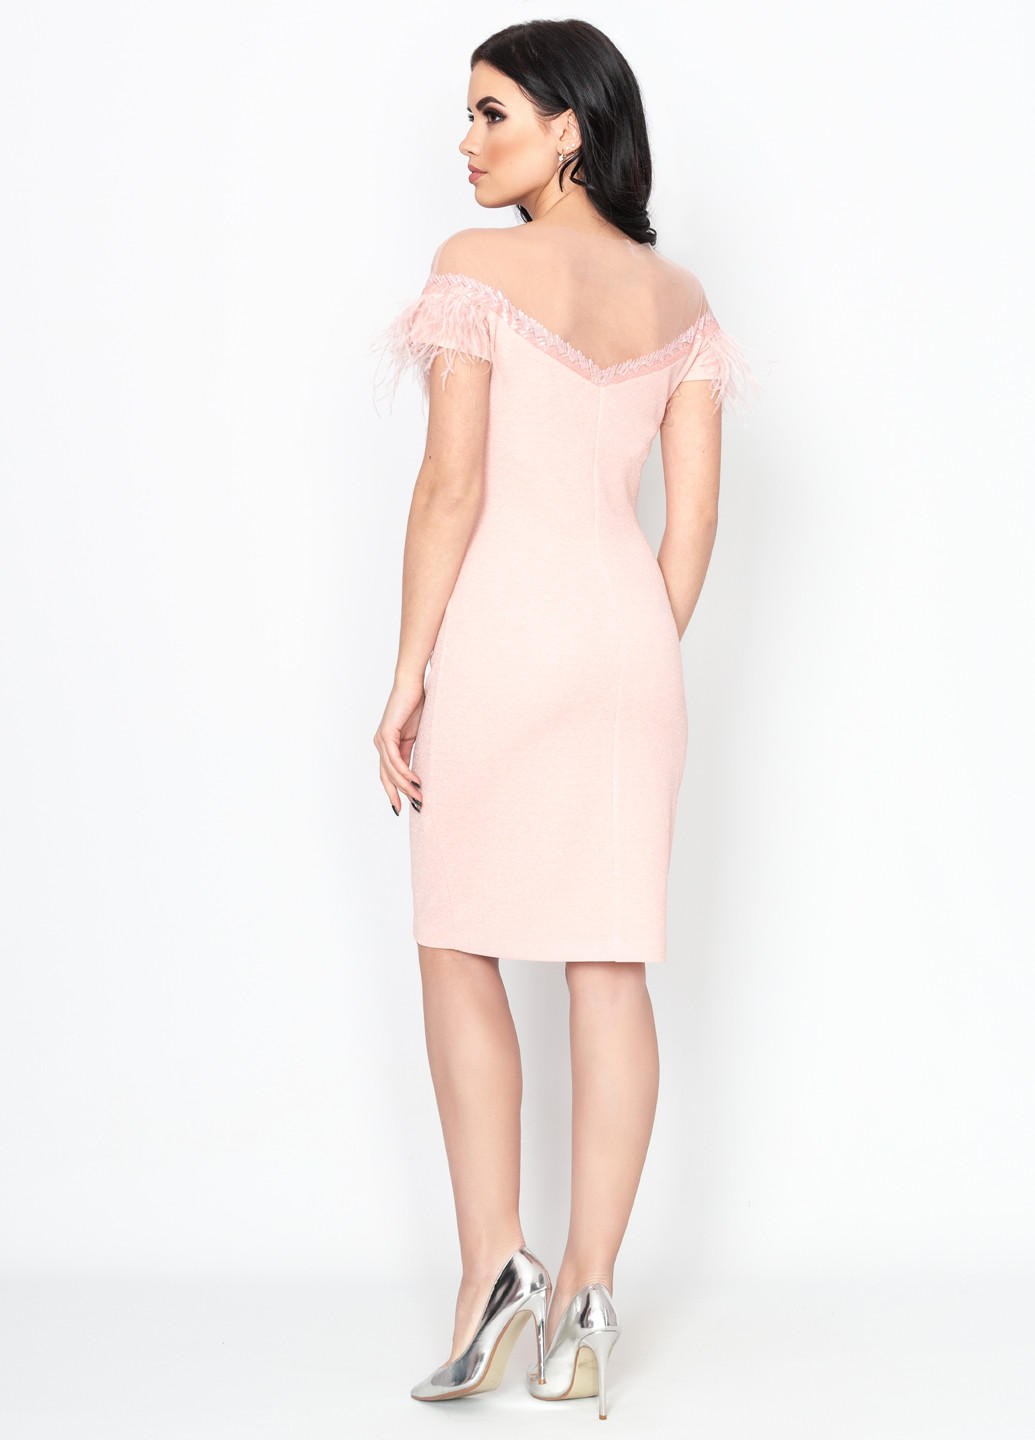 Бледно-розовое коктейльное платье короткое Seam однотонное